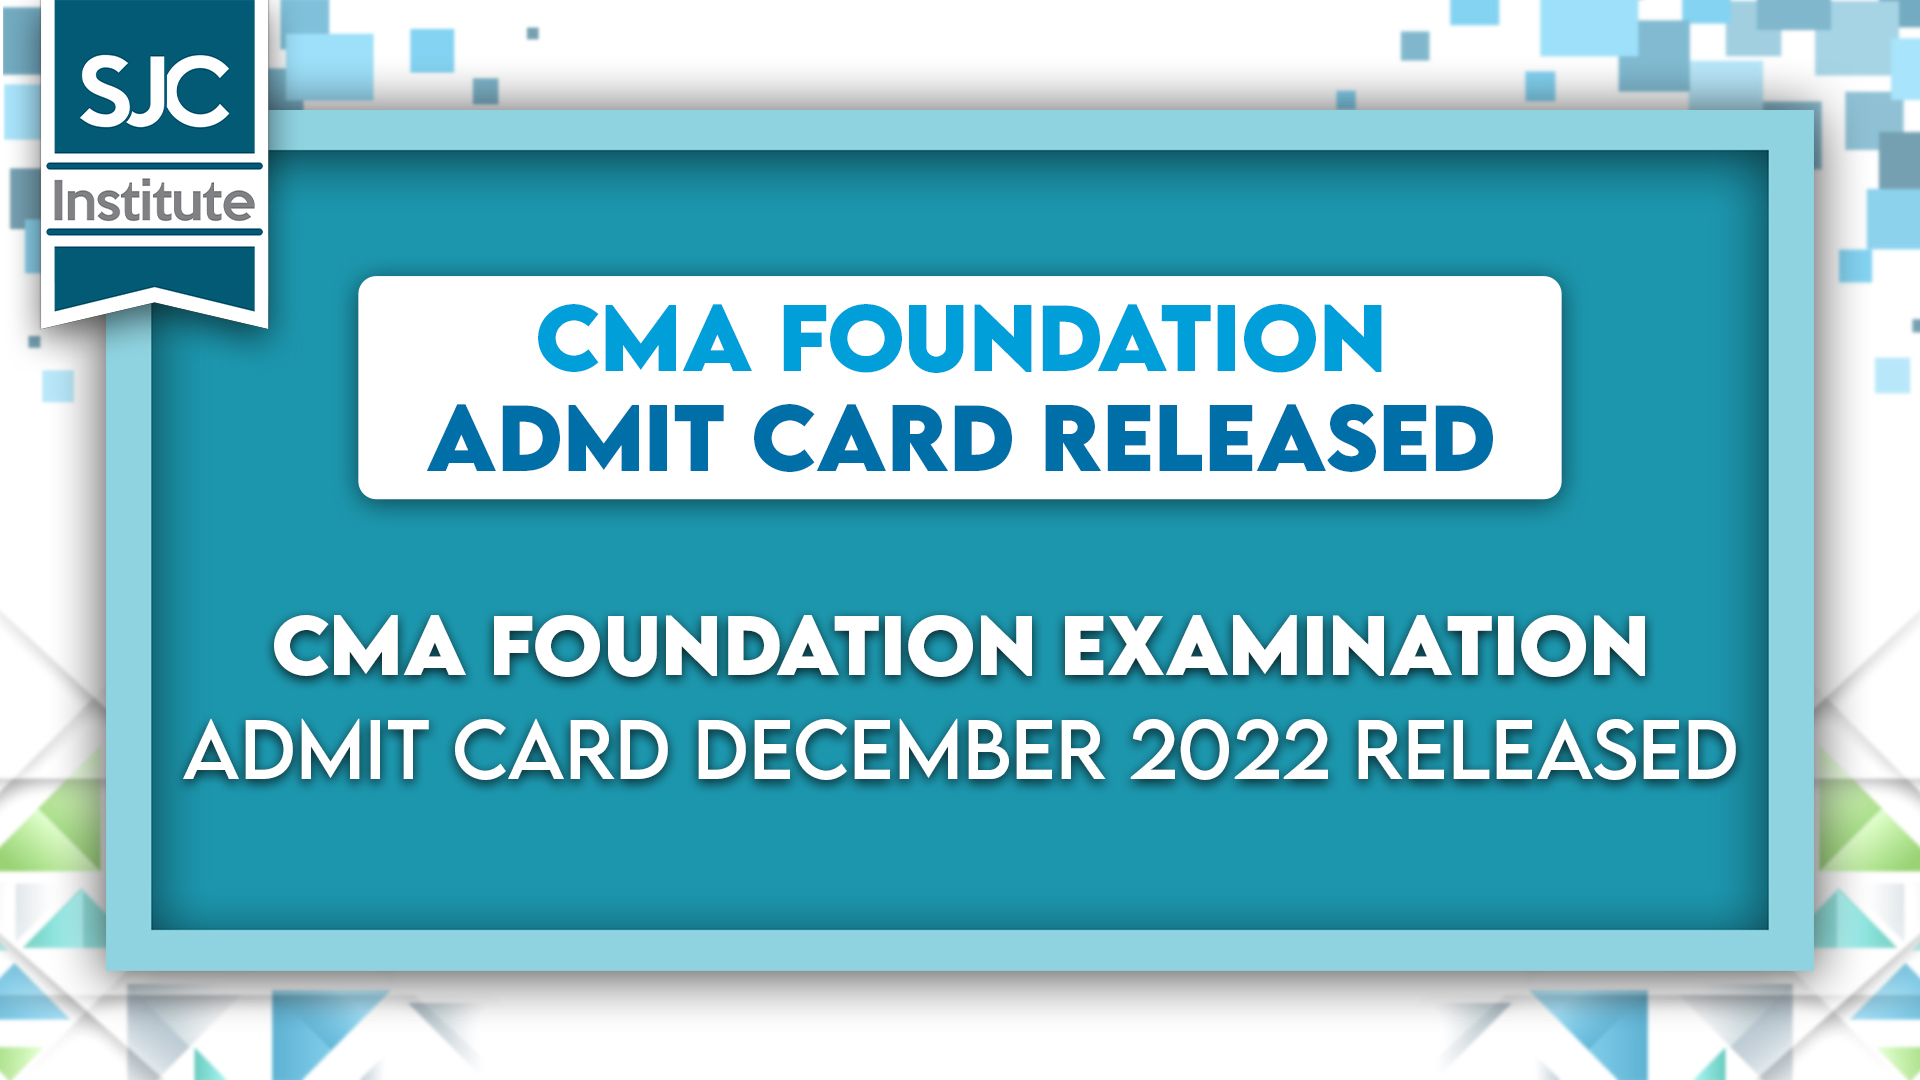 CAM Foundation Admit Card SJC Institute